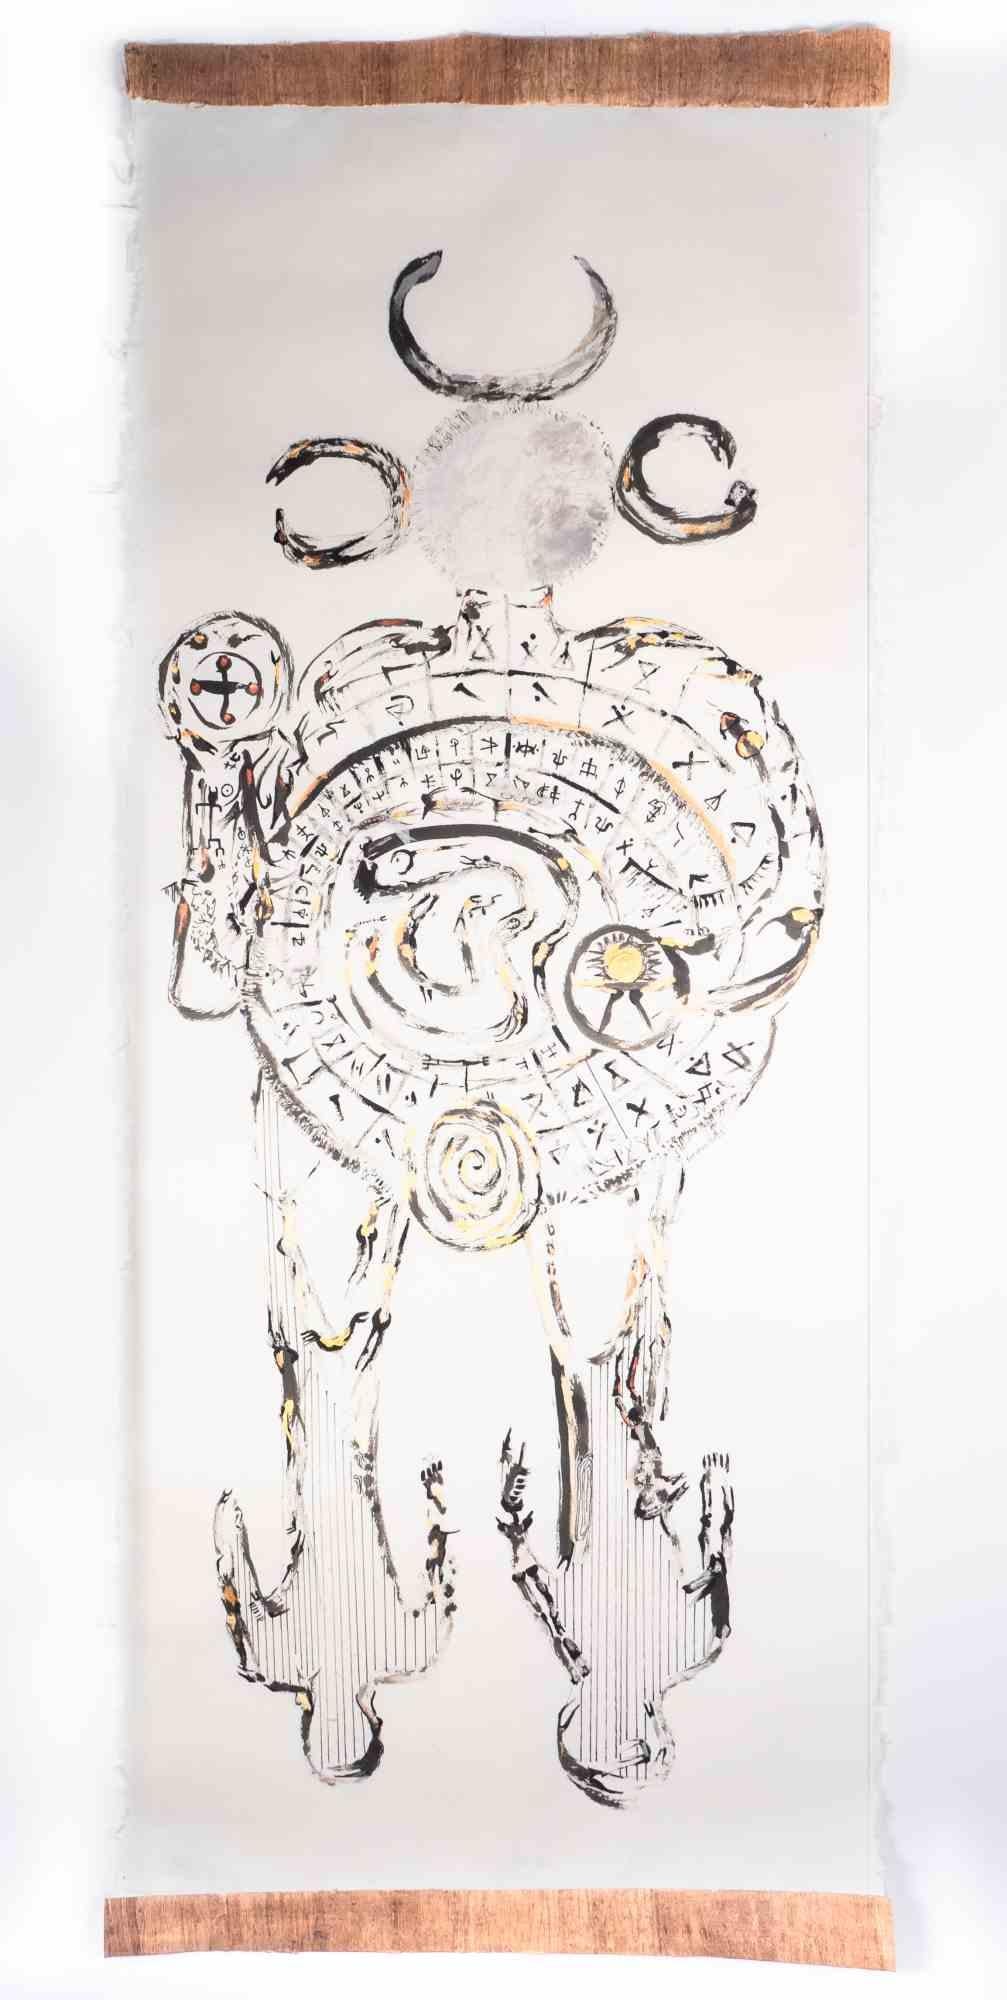 Mutter Erde ist eine Zeichnung der iranischen Künstlerin und Dichterin Parimah Avani aus dem Jahr 2023.

China-Tusche, Acryl und Kohle auf traditionellem japanischem Kozo-Papier, mit aufgetragenem Papyrus, Plettenberg, DE.

Ausgestellt in "Heroine's